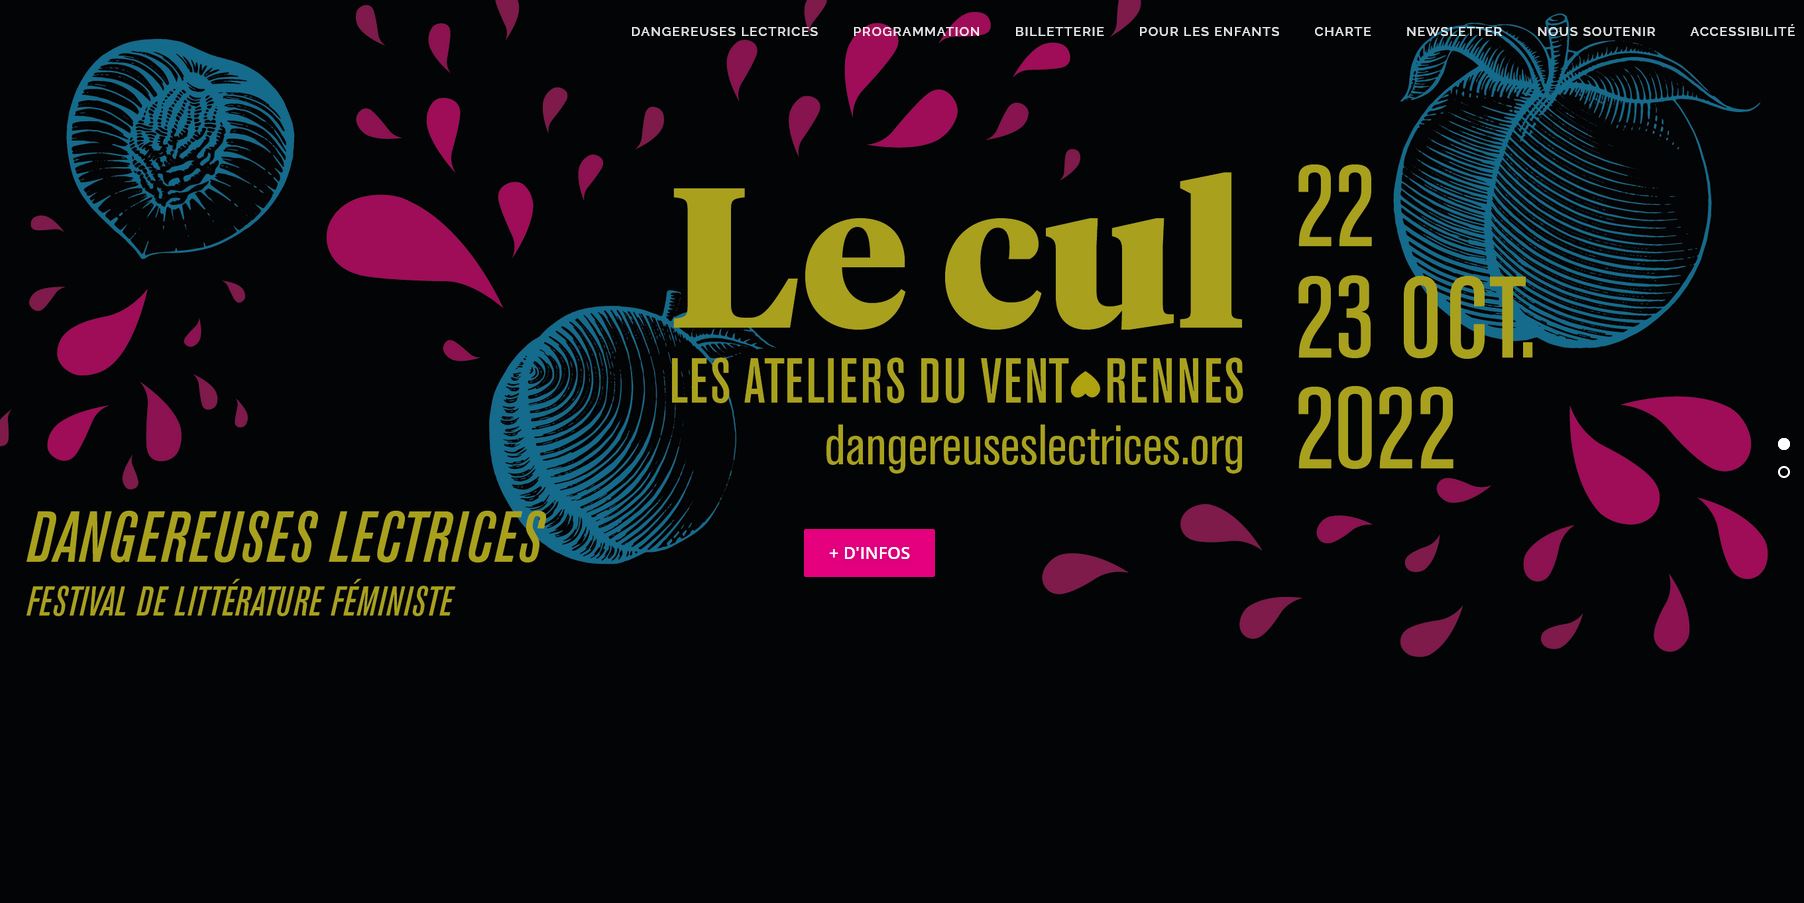 Festival Dangereuses Lectrices aux Ateliers du vent, Rennes, les 22 & 23 Octobre 2022